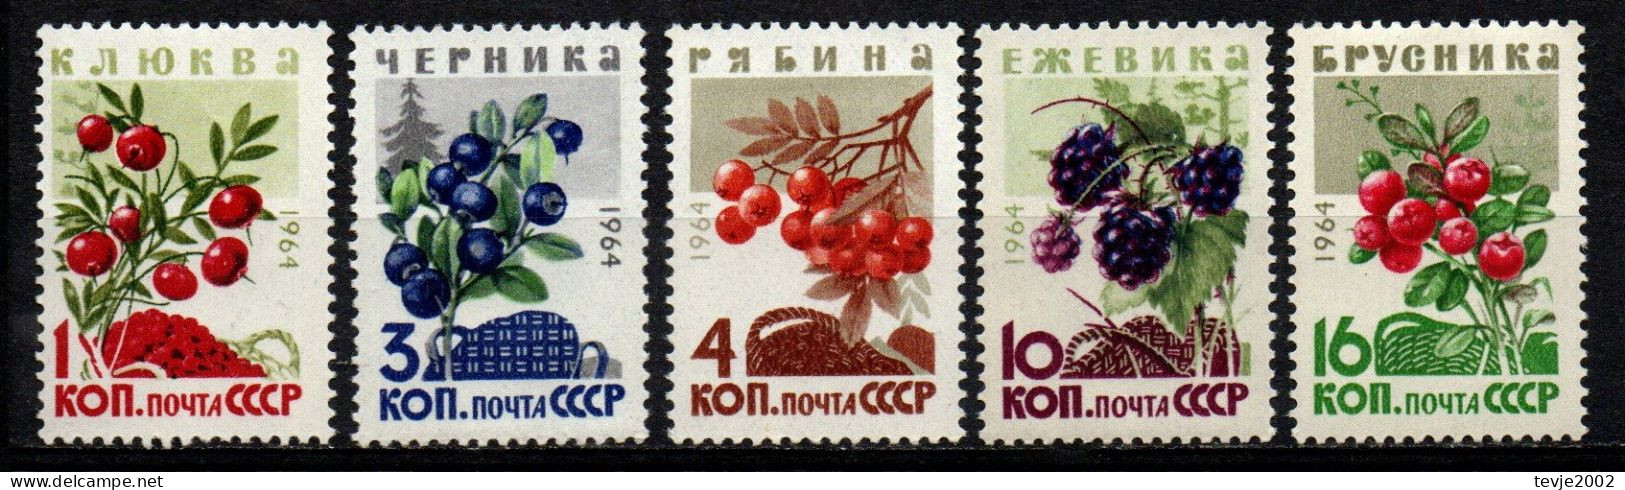 Sowjetunion UdSSR CCCP 1964 - Mi.Nr. 2996 - 3000 - Postfrisch MNH - Früchte Obst Fruits Beeren Berries - Obst & Früchte